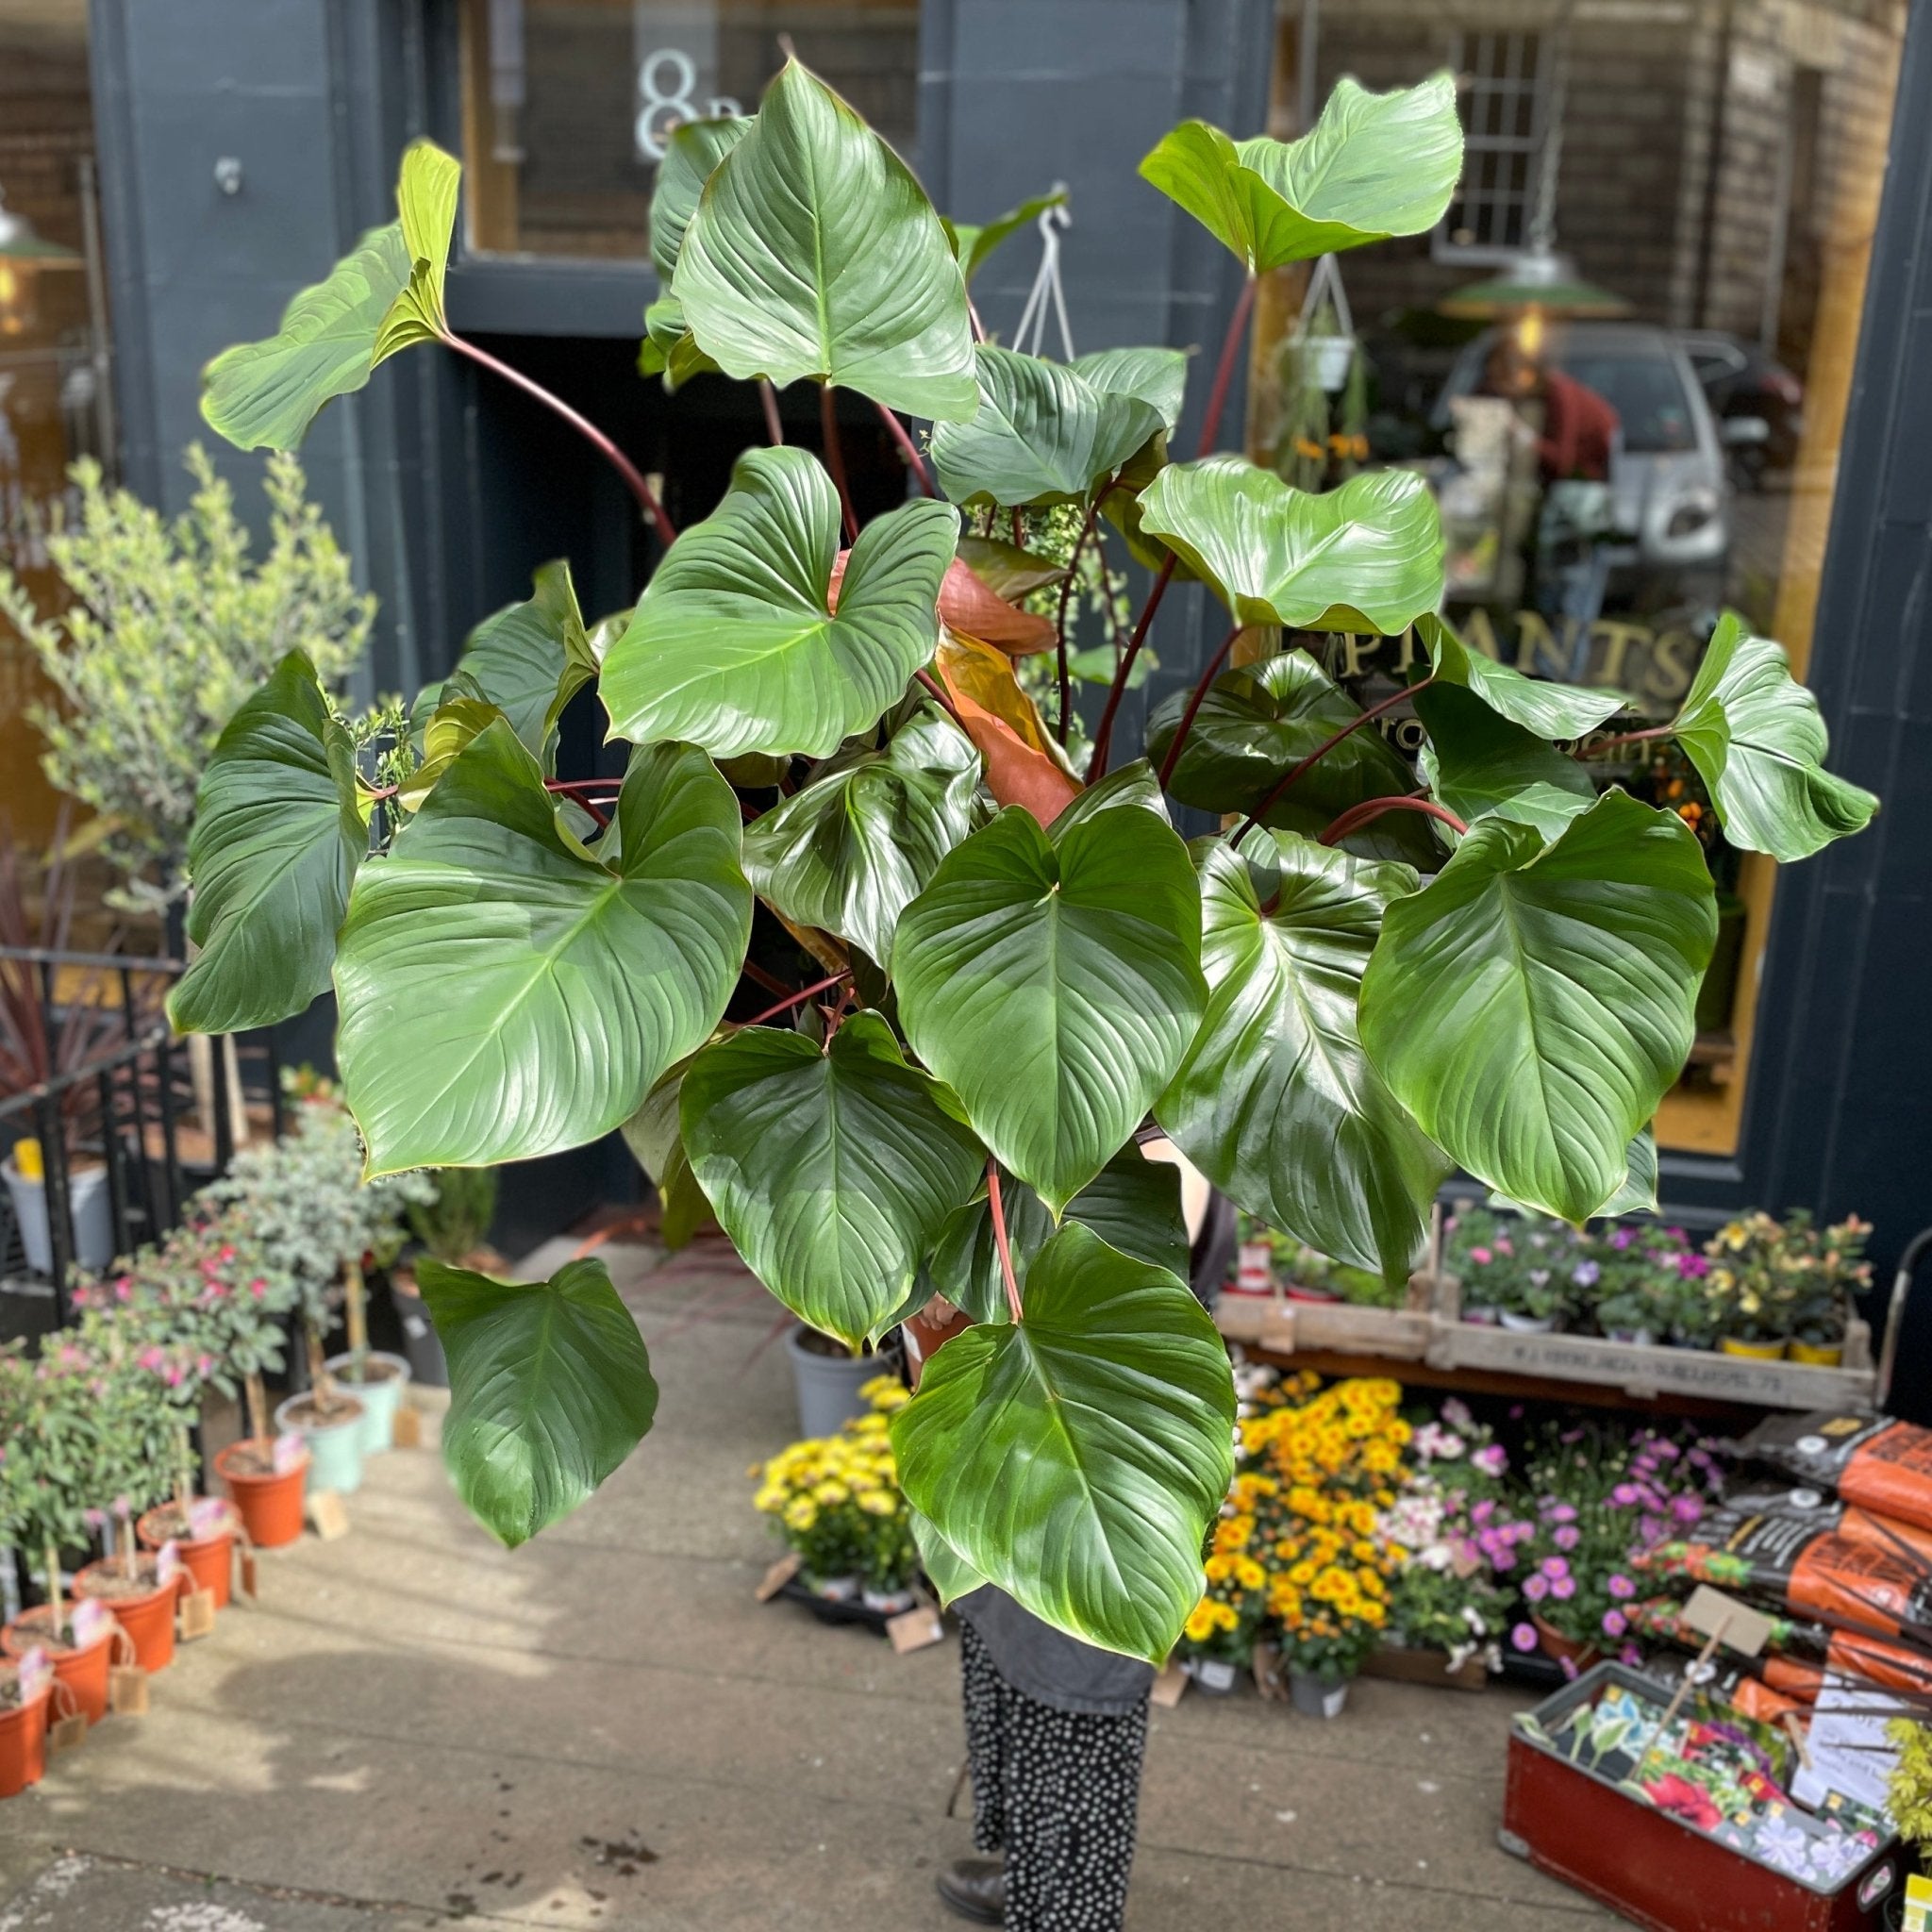 Homalomena ‘Maggy’ (34cm pot) - grow urban. UK